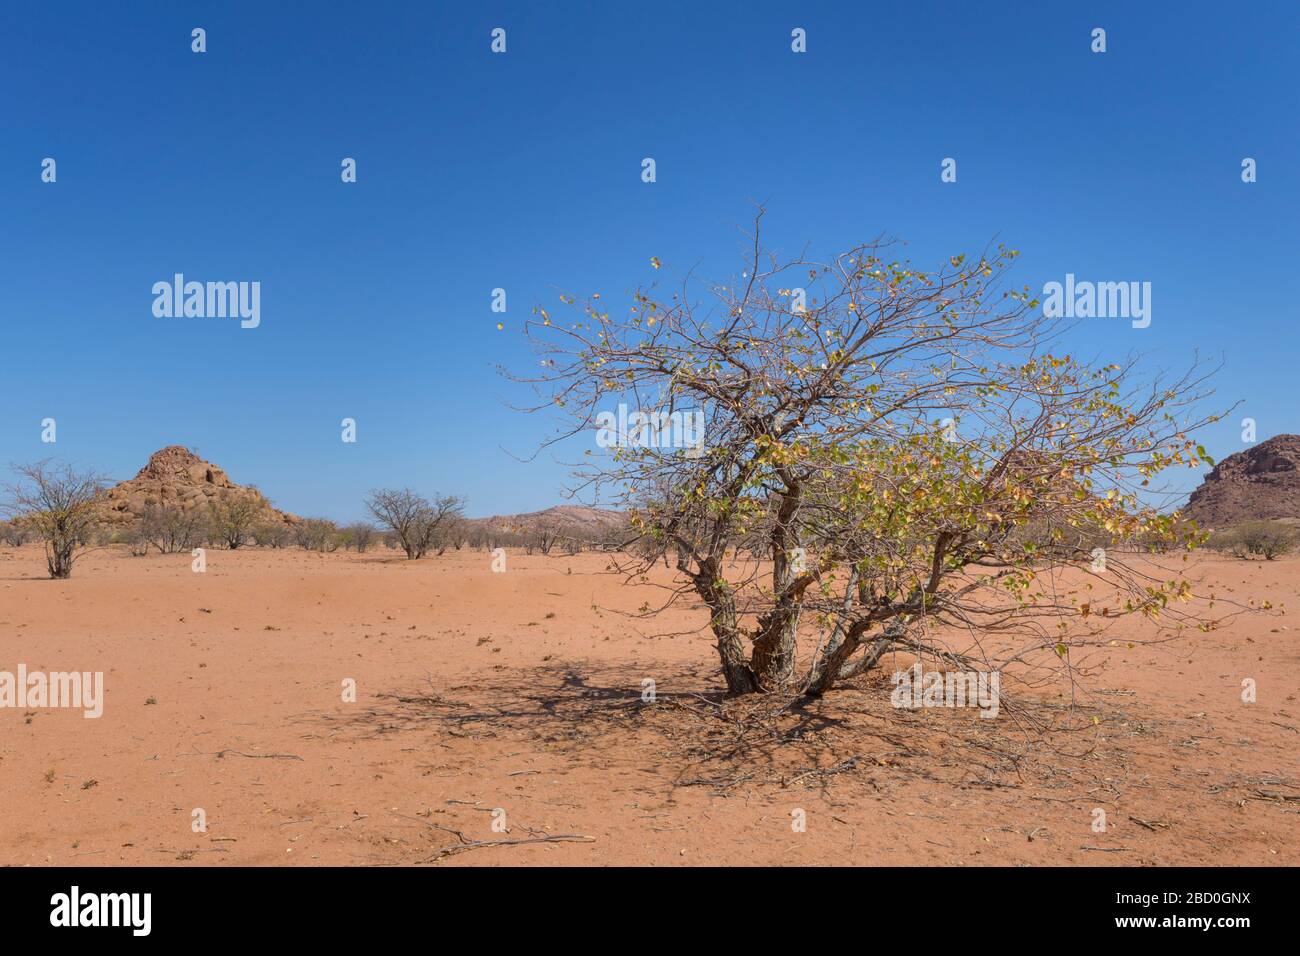 Vegetation in desert landscape, Damaraland, Namibia. Stock Photo